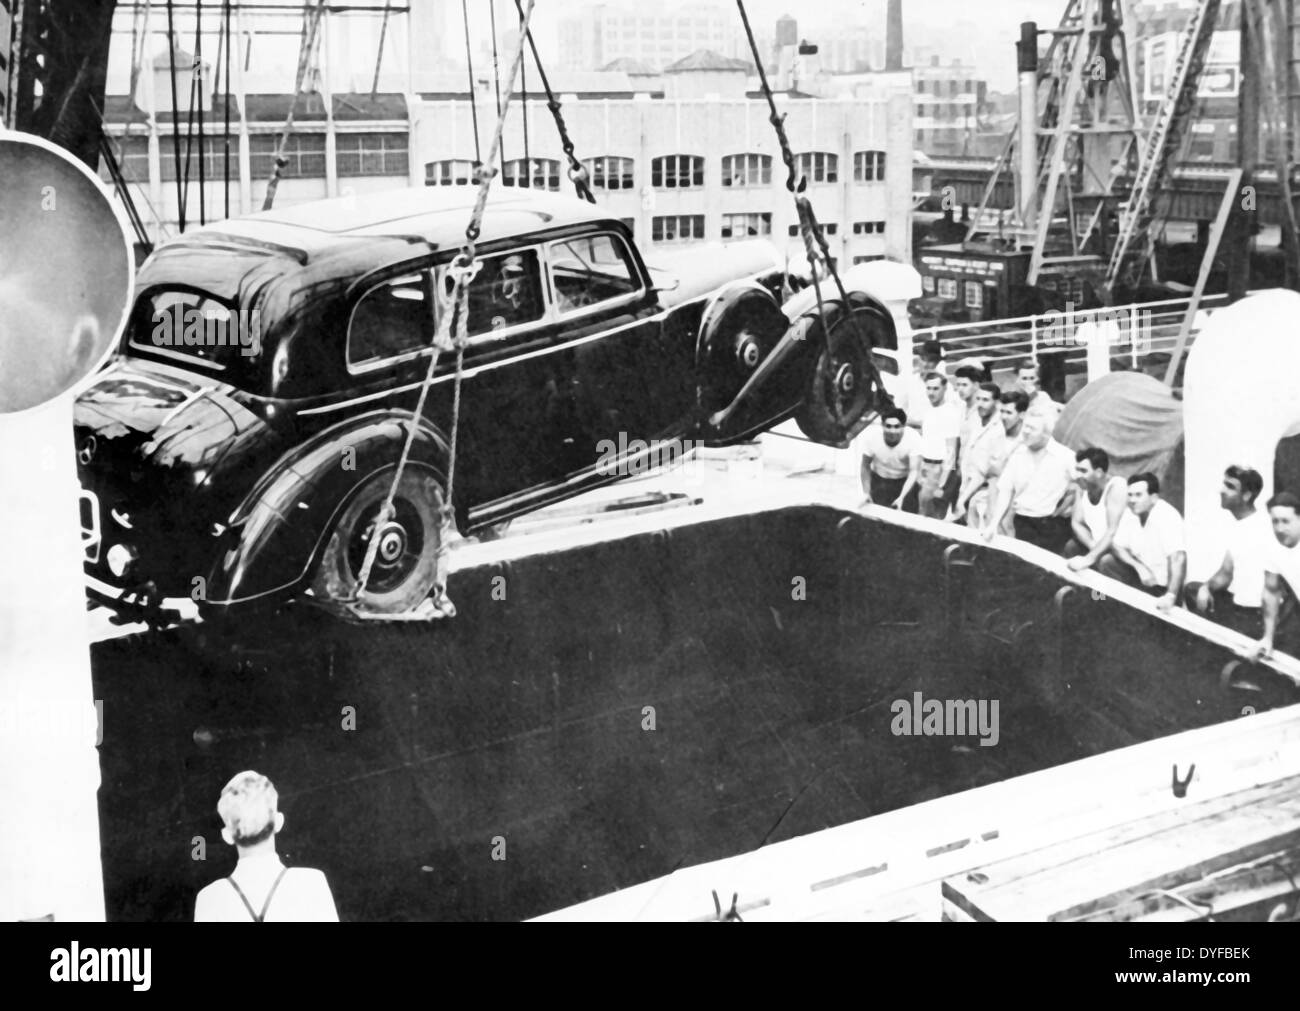 La mercedes blindée d'Adolf Hitler, qui faisait partie des butin de guerre de l'armée française, est déchargée du bateau à vapeur français 'de Grasse' dans le port de New York, Etats-Unis, en juillet 1947. Le véhicule a été exposé à l'exposition nationale de Toronto au Canada. Fotoarchiv für Zeitgeschichte Banque D'Images